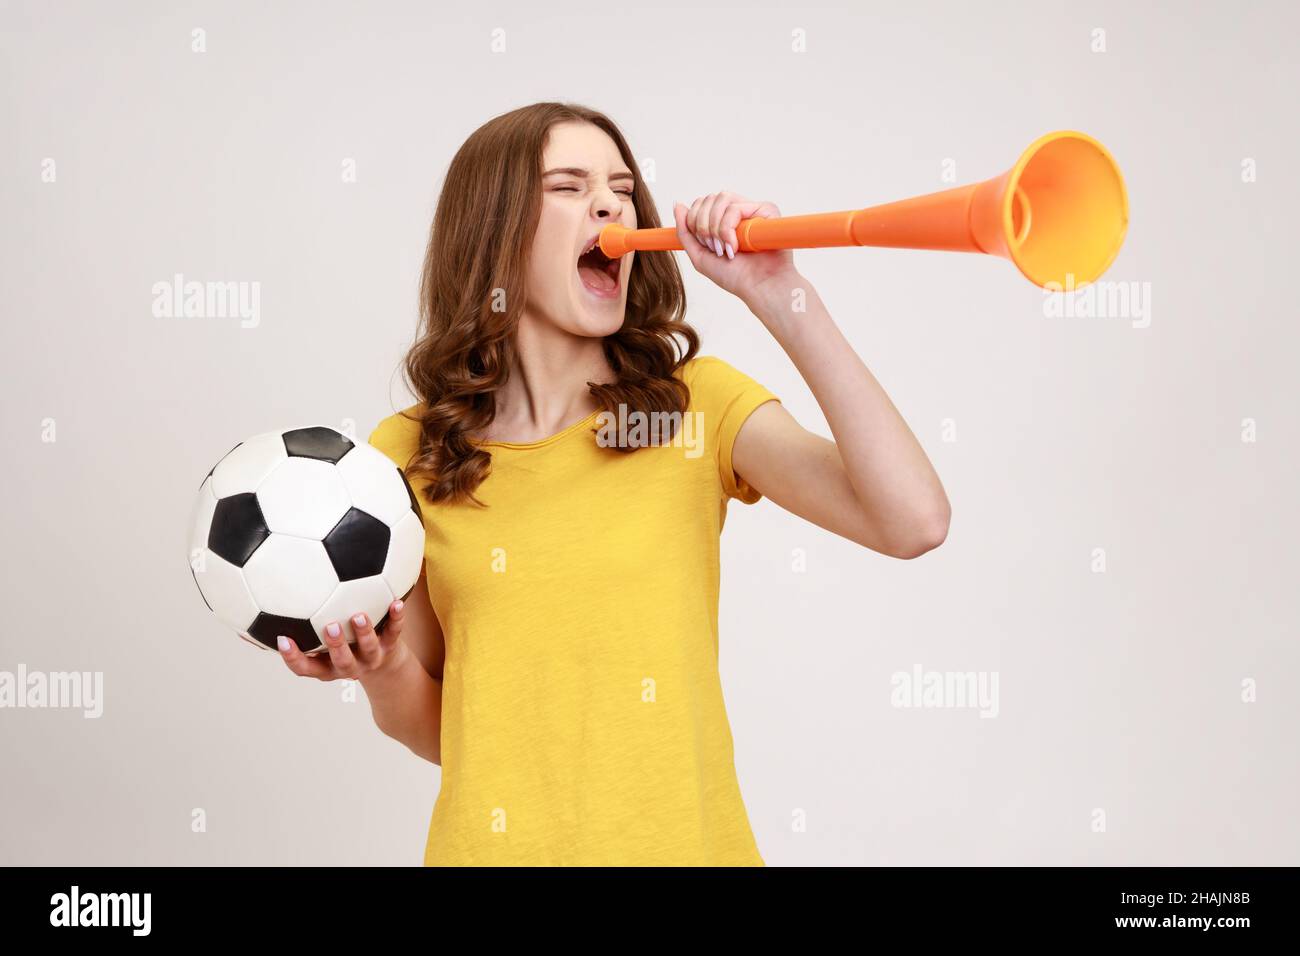 Estremamente positiva ragazza adolescente soddisfatto in giallo t-shirt urlando in corno che tiene palla di calcio, celebrando la vittoria della squadra di calcio preferita. Studio interno girato isolato su sfondo grigio. Foto Stock